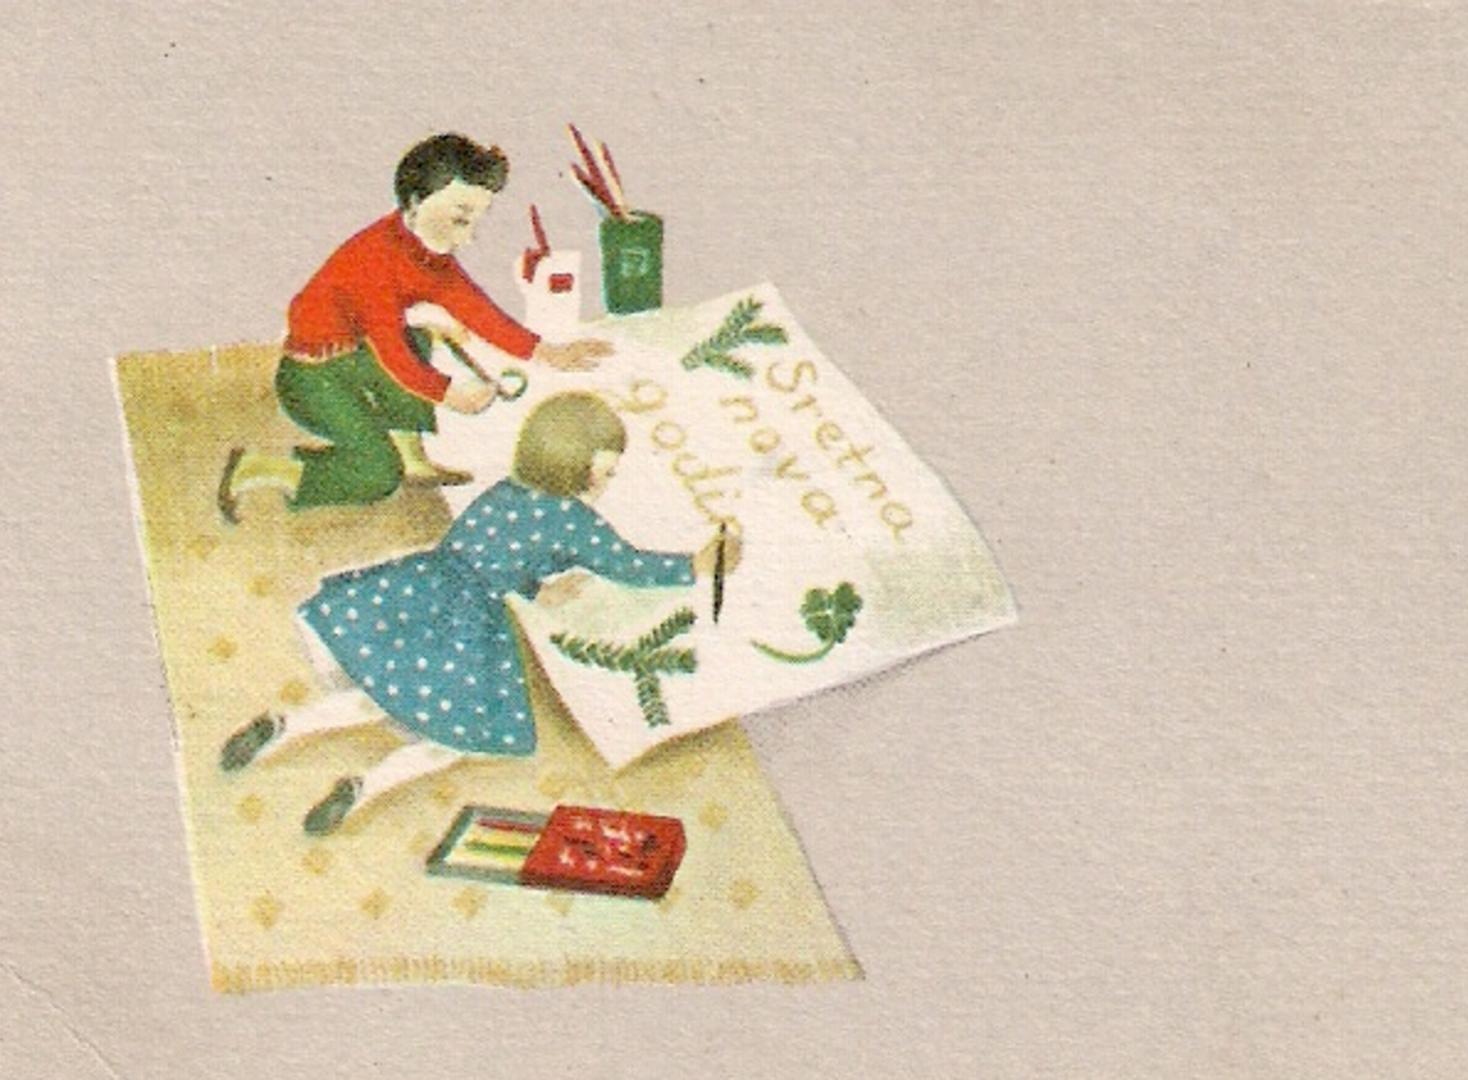 Motiv iz 1965. godine - djevojčica i dječak koji izrađuju veliku čestitku s natpisom